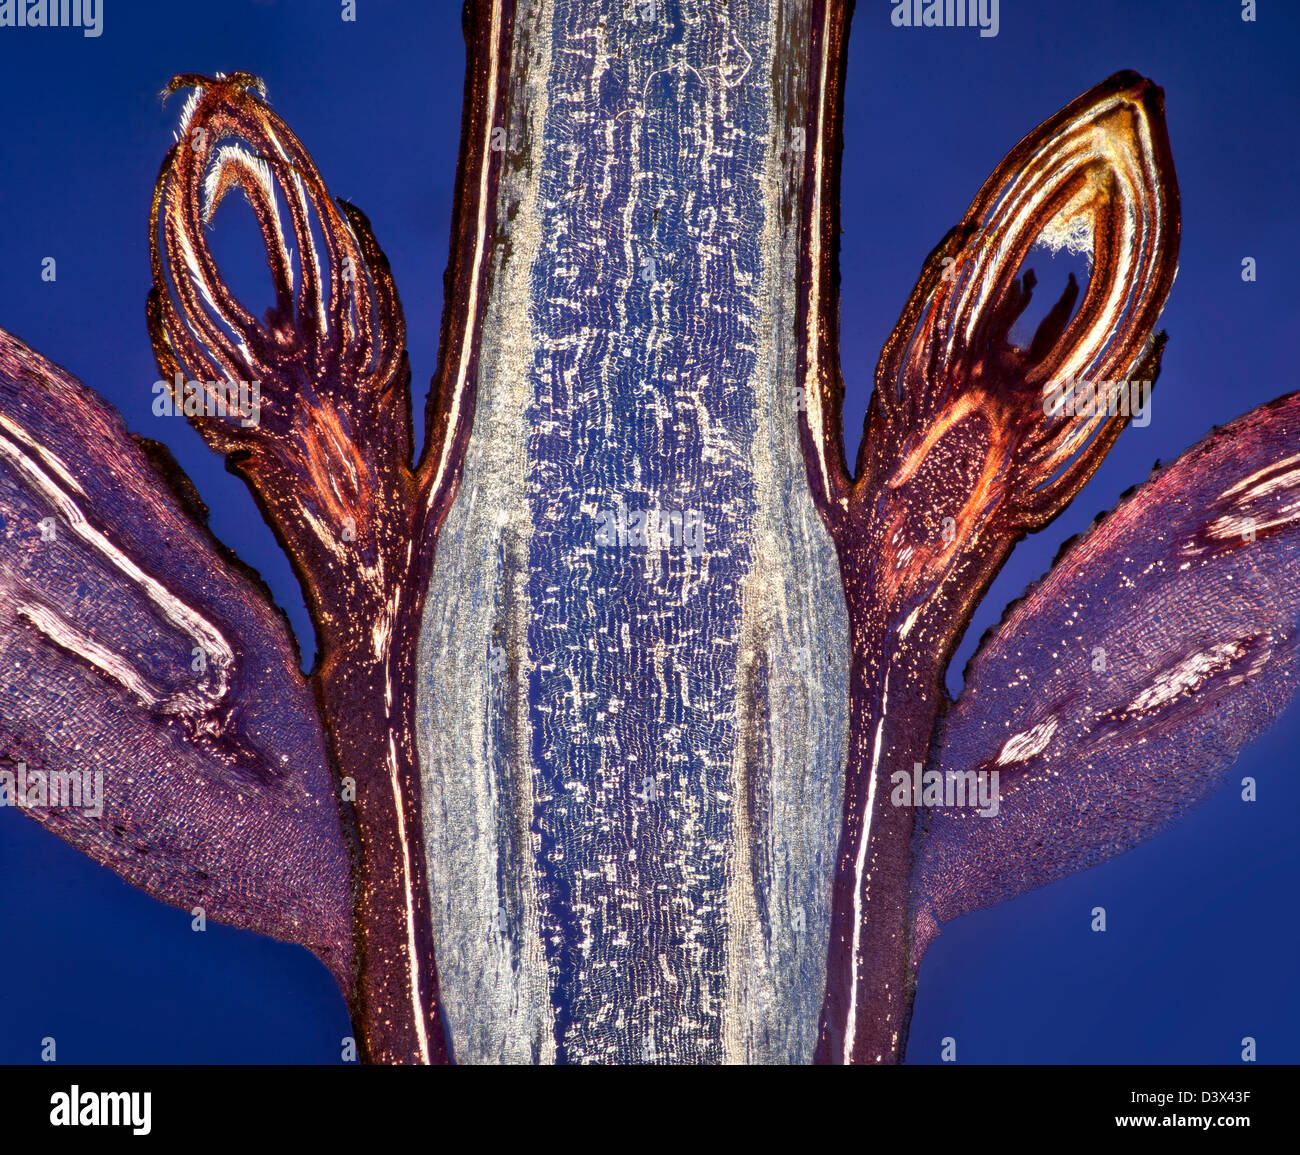 Dunkelfeld Mikrophotographie, Ahorn Blatt Knospen Entblätterung Knospenschuppen, gebeizt Folie Abschnitt, blauen Hintergrund. Stockfoto